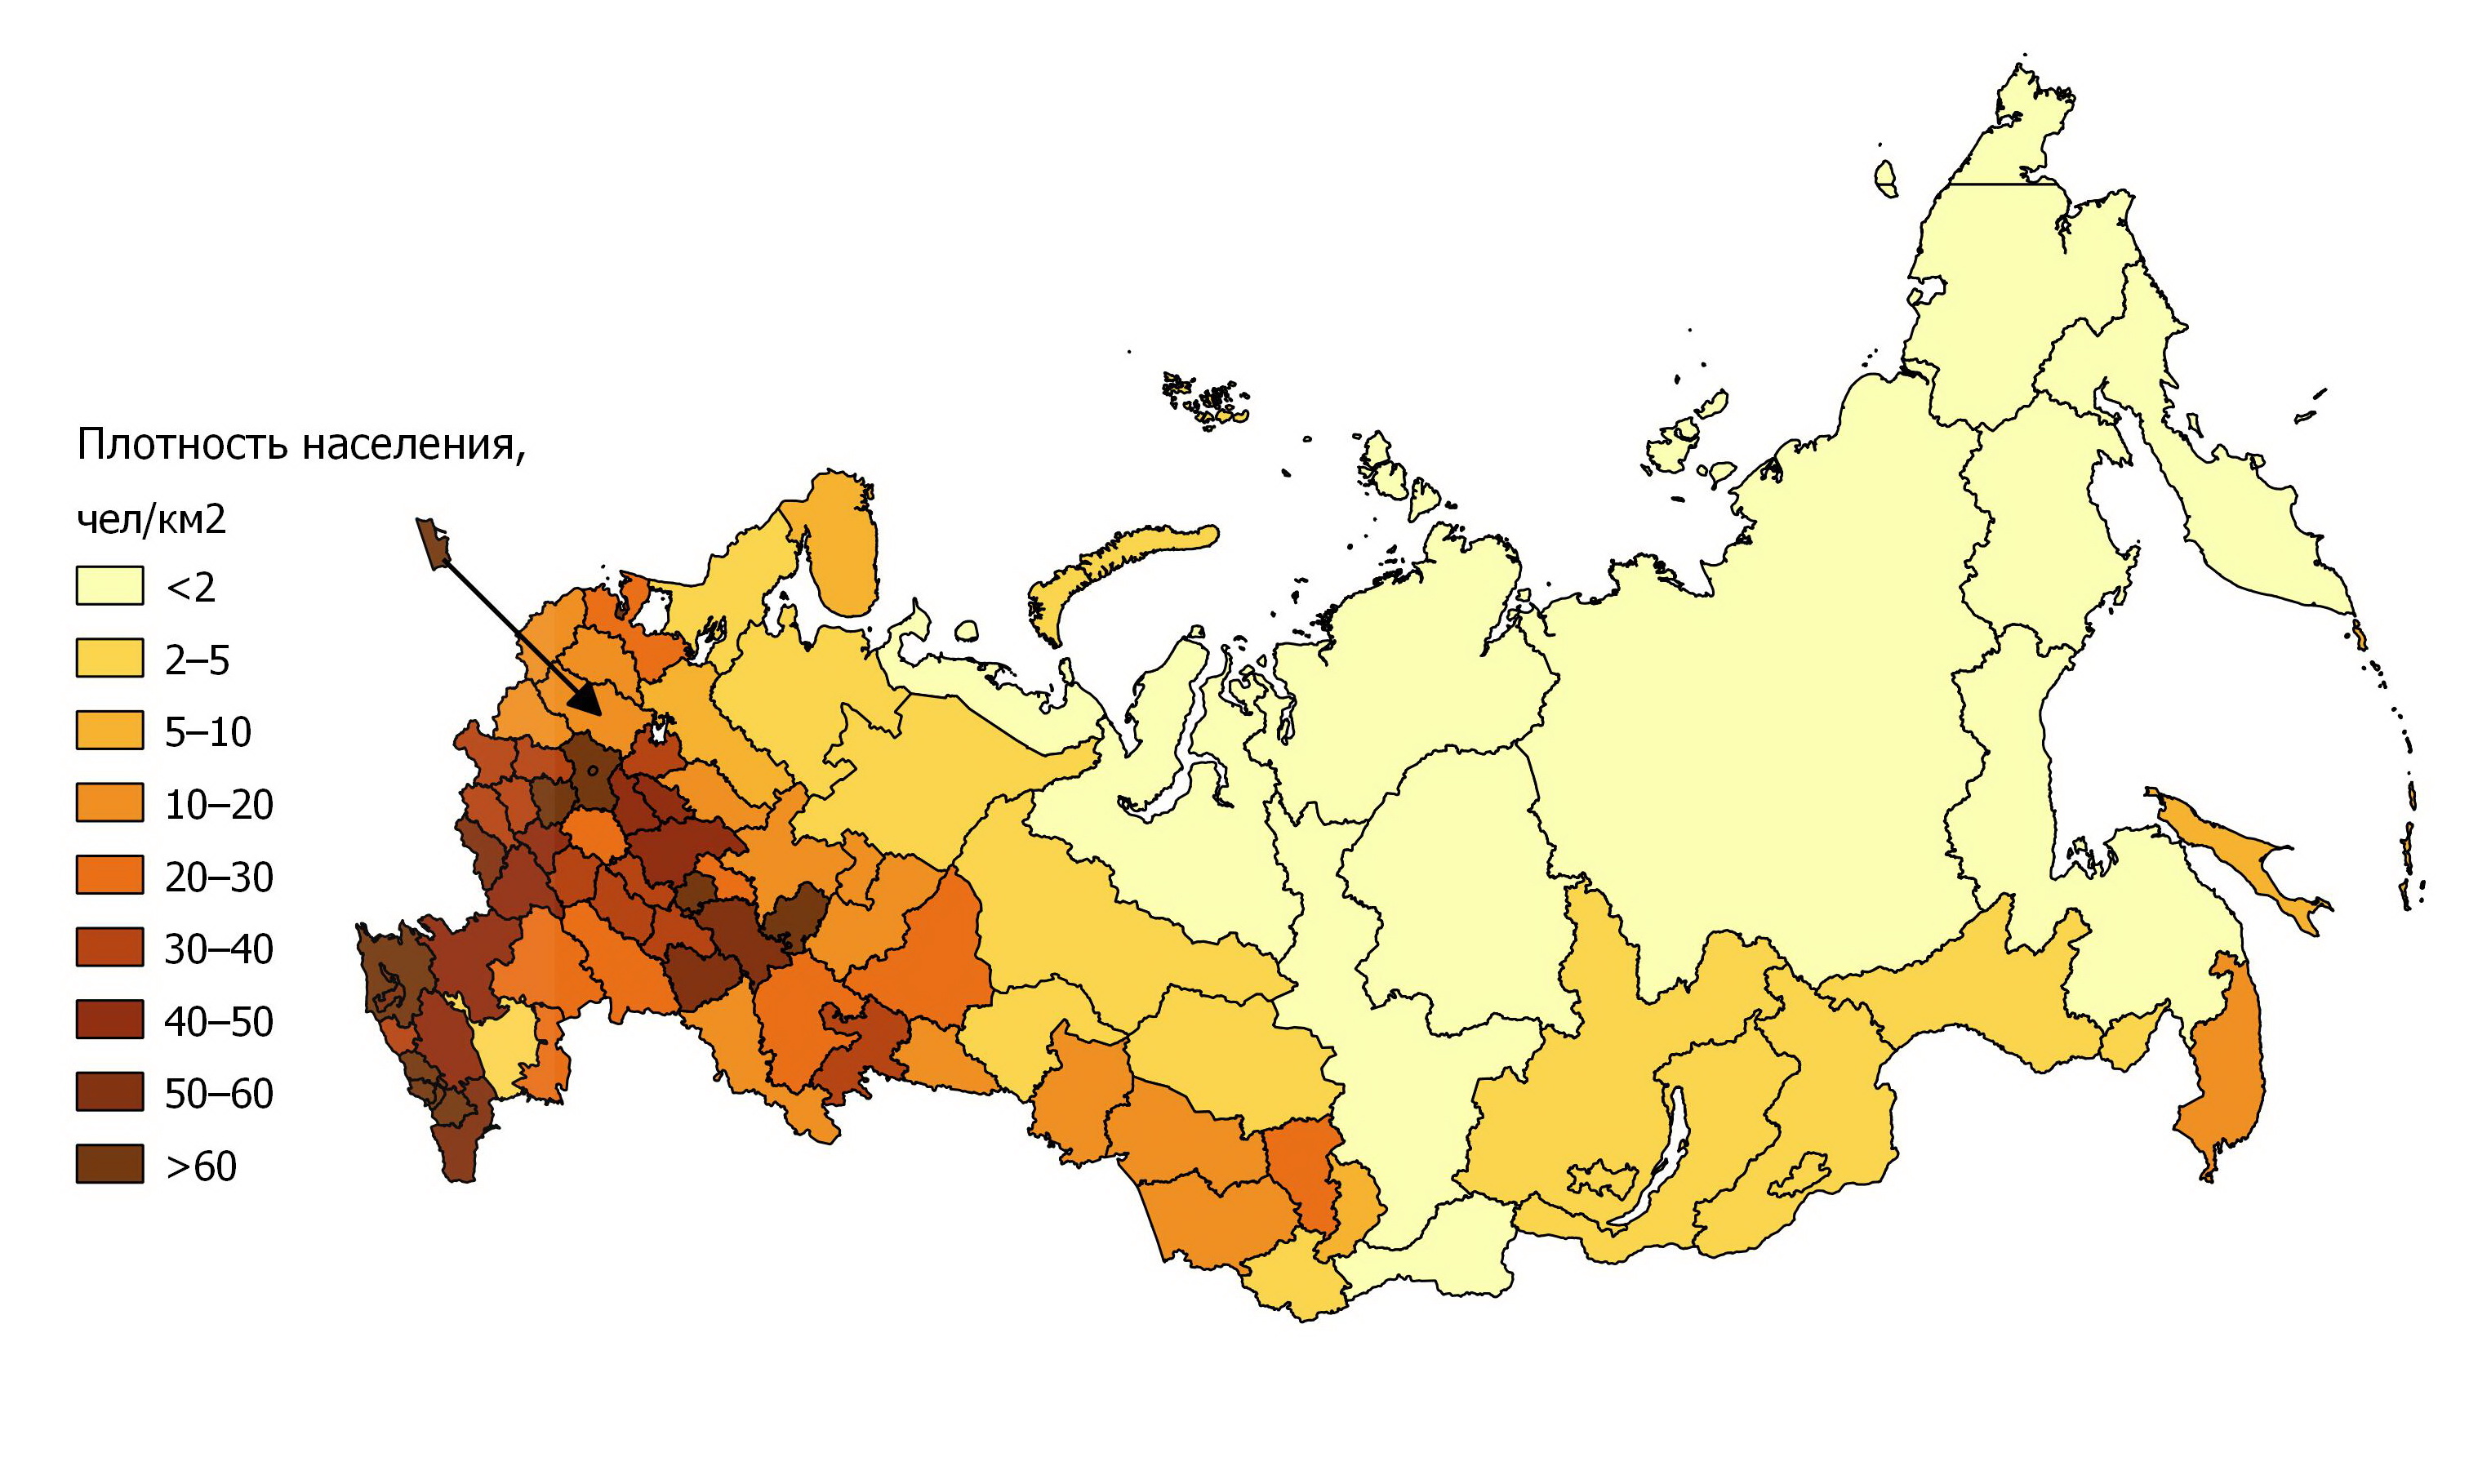 Наибольшая плотность населения наблюдается в урал. Карта плотности населения России по регионам 2020. Карта плотности населения России 2021. Карта плотности населения России по субъектам. Карта средней плотности населения России.